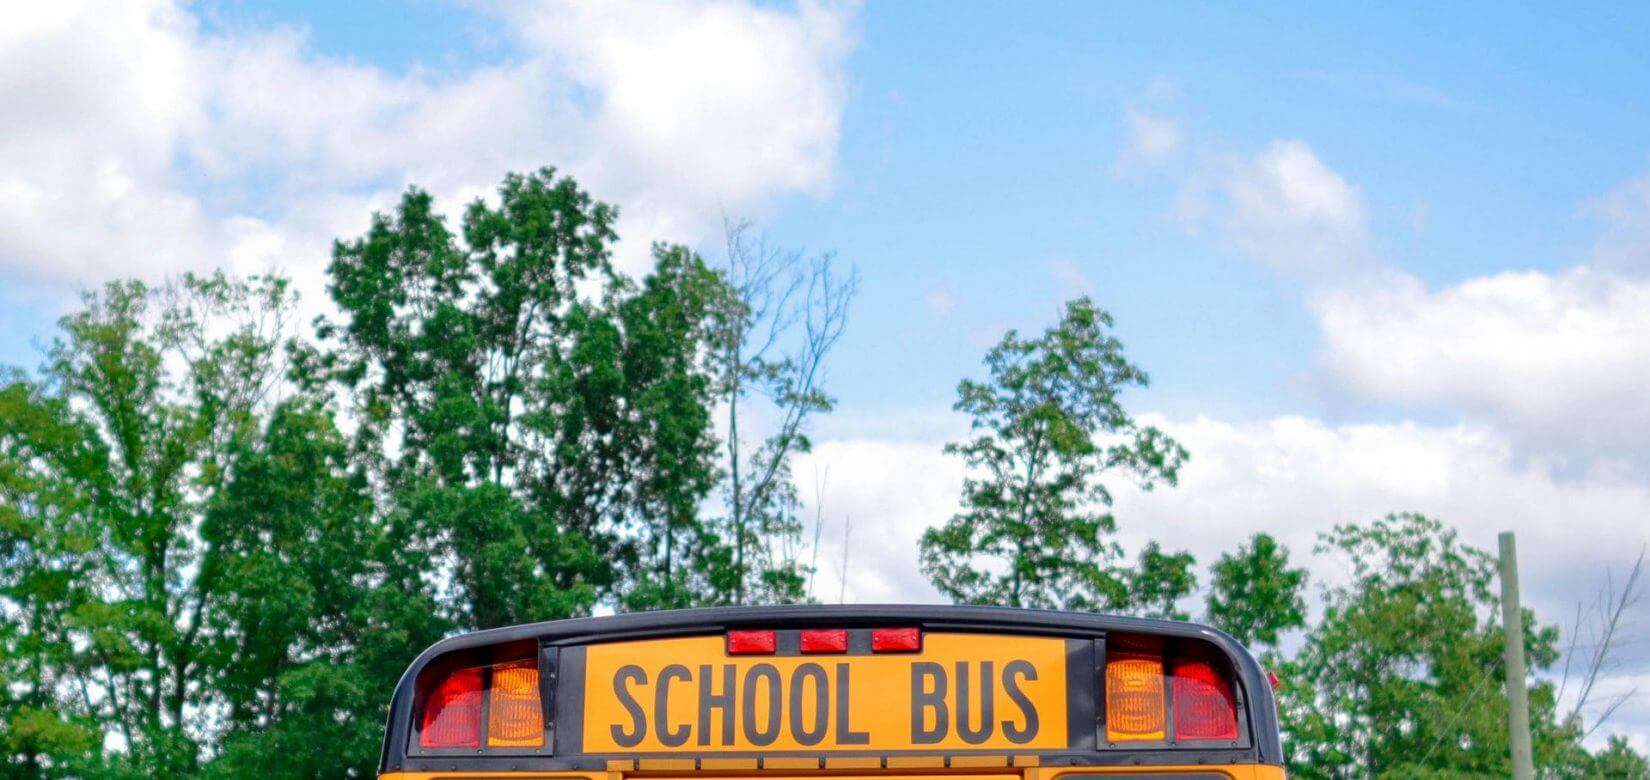 Βάρκιζα: Ξέχασαν 2χρονο κοριτσάκι μέσα σε σχολικό λεωφορείο επί τέσσερις ώρες - Αδιανόητο!